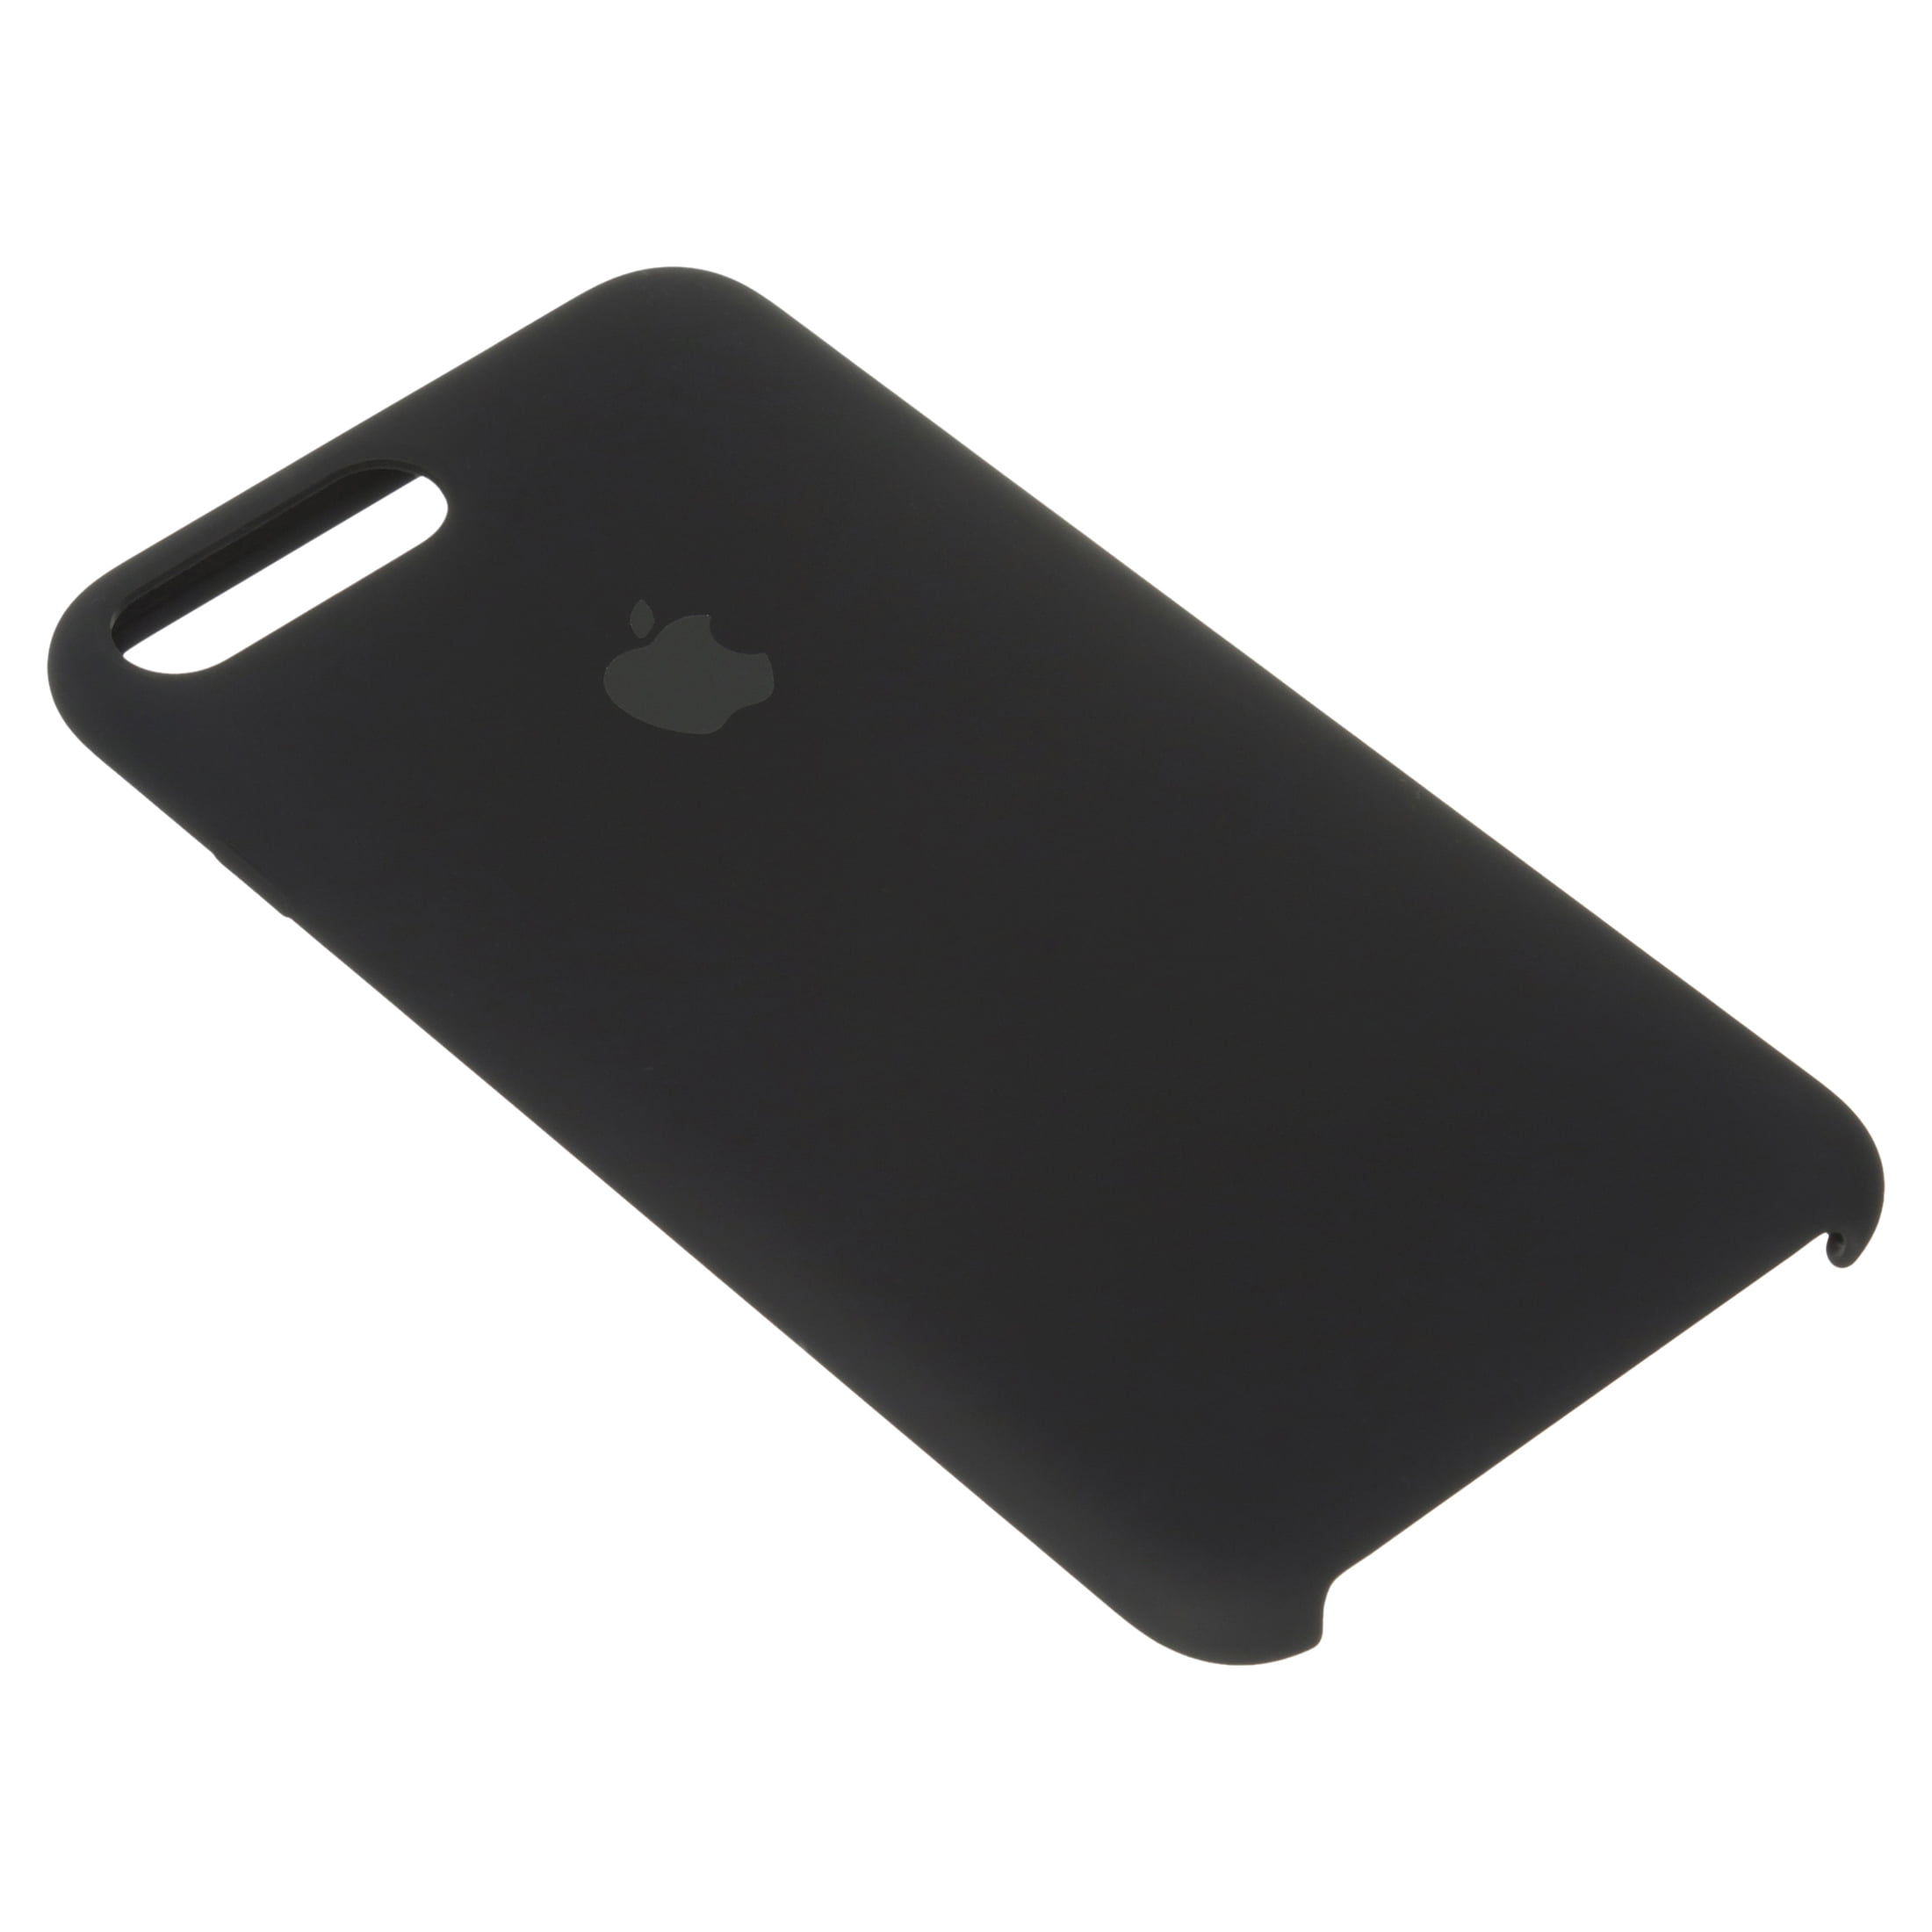 Apple Silicone Case for iPhone 8 Plus & iPhone 7 Plus - Black